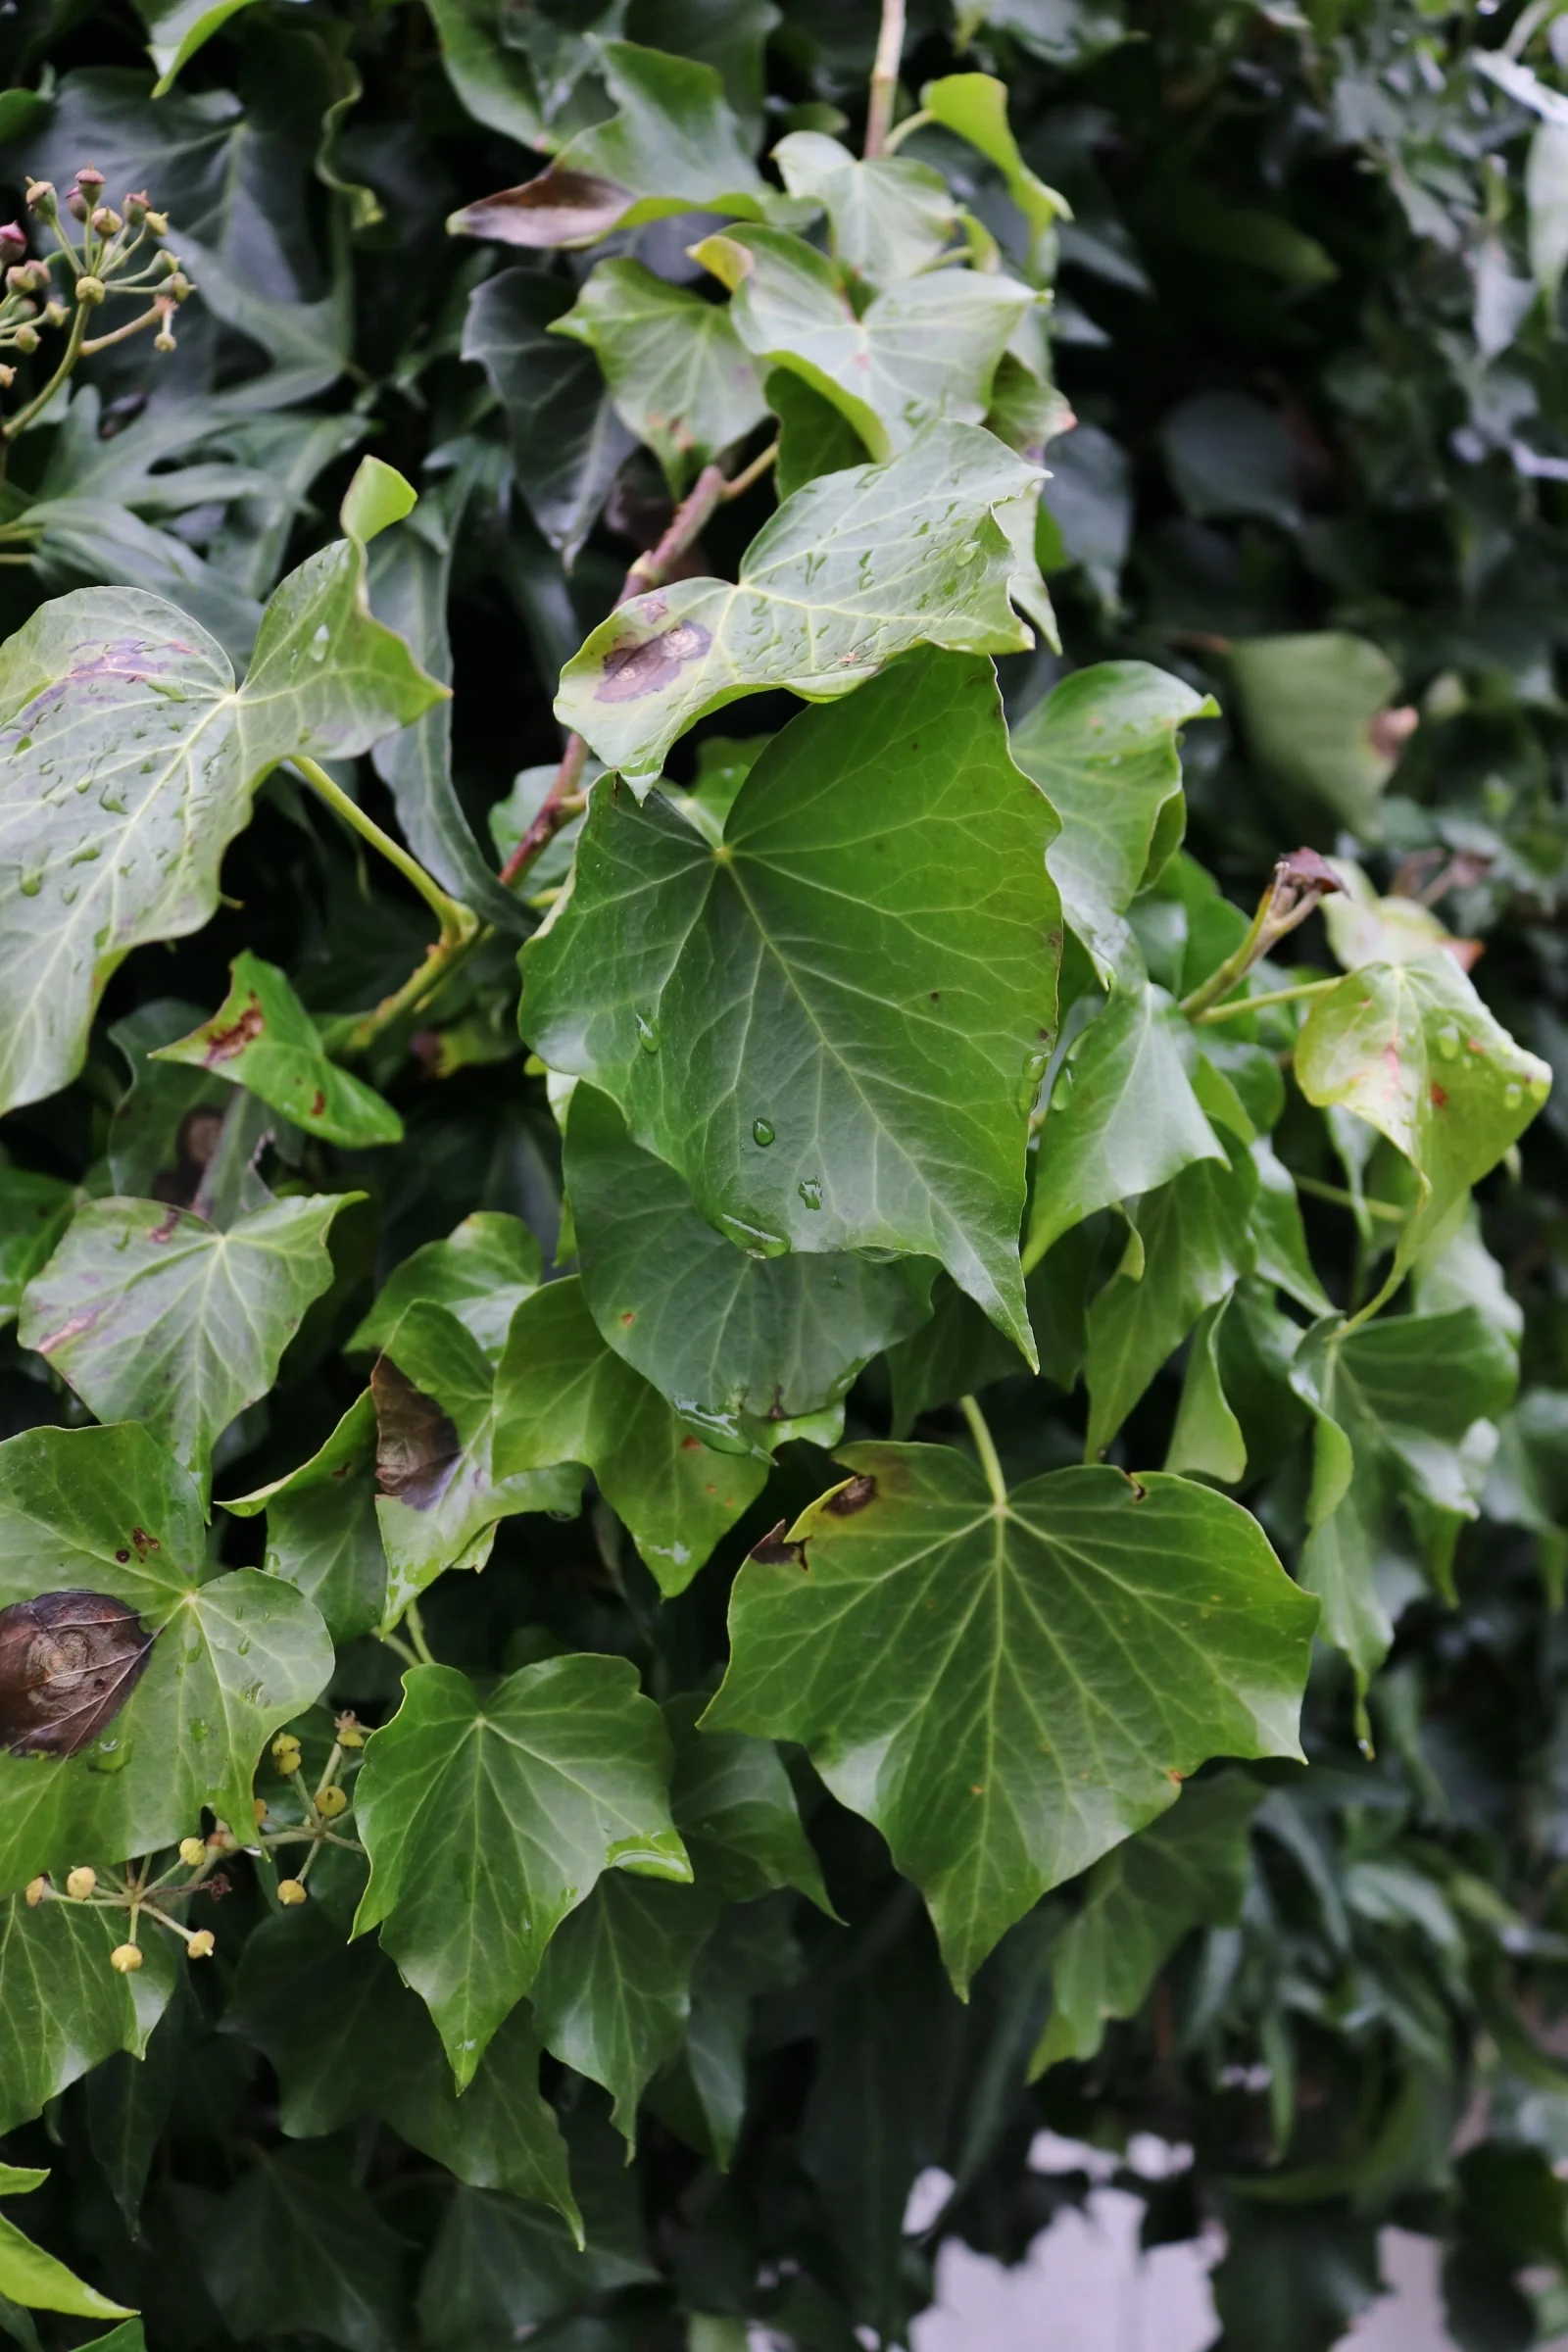 Die Blätter des Efeu sind dreieckig aufgebaut und haben eine hellgrüne Färbung.